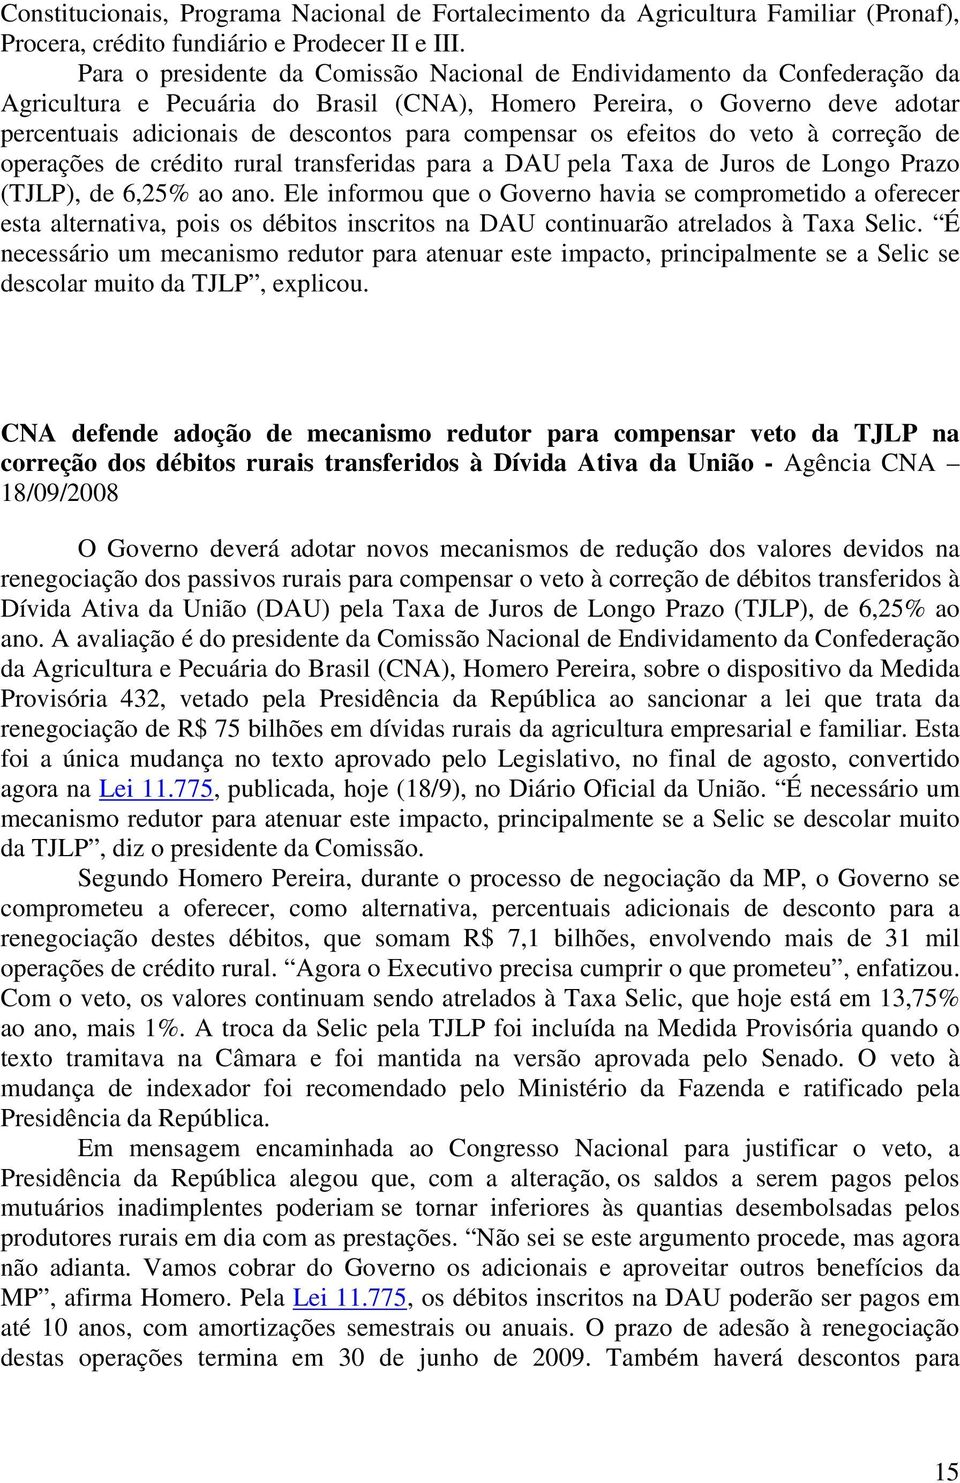 compensar os efeitos do veto à correção de operações de crédito rural transferidas para a DAU pela Taxa de Juros de Longo Prazo (TJLP), de 6,25% ao ano.